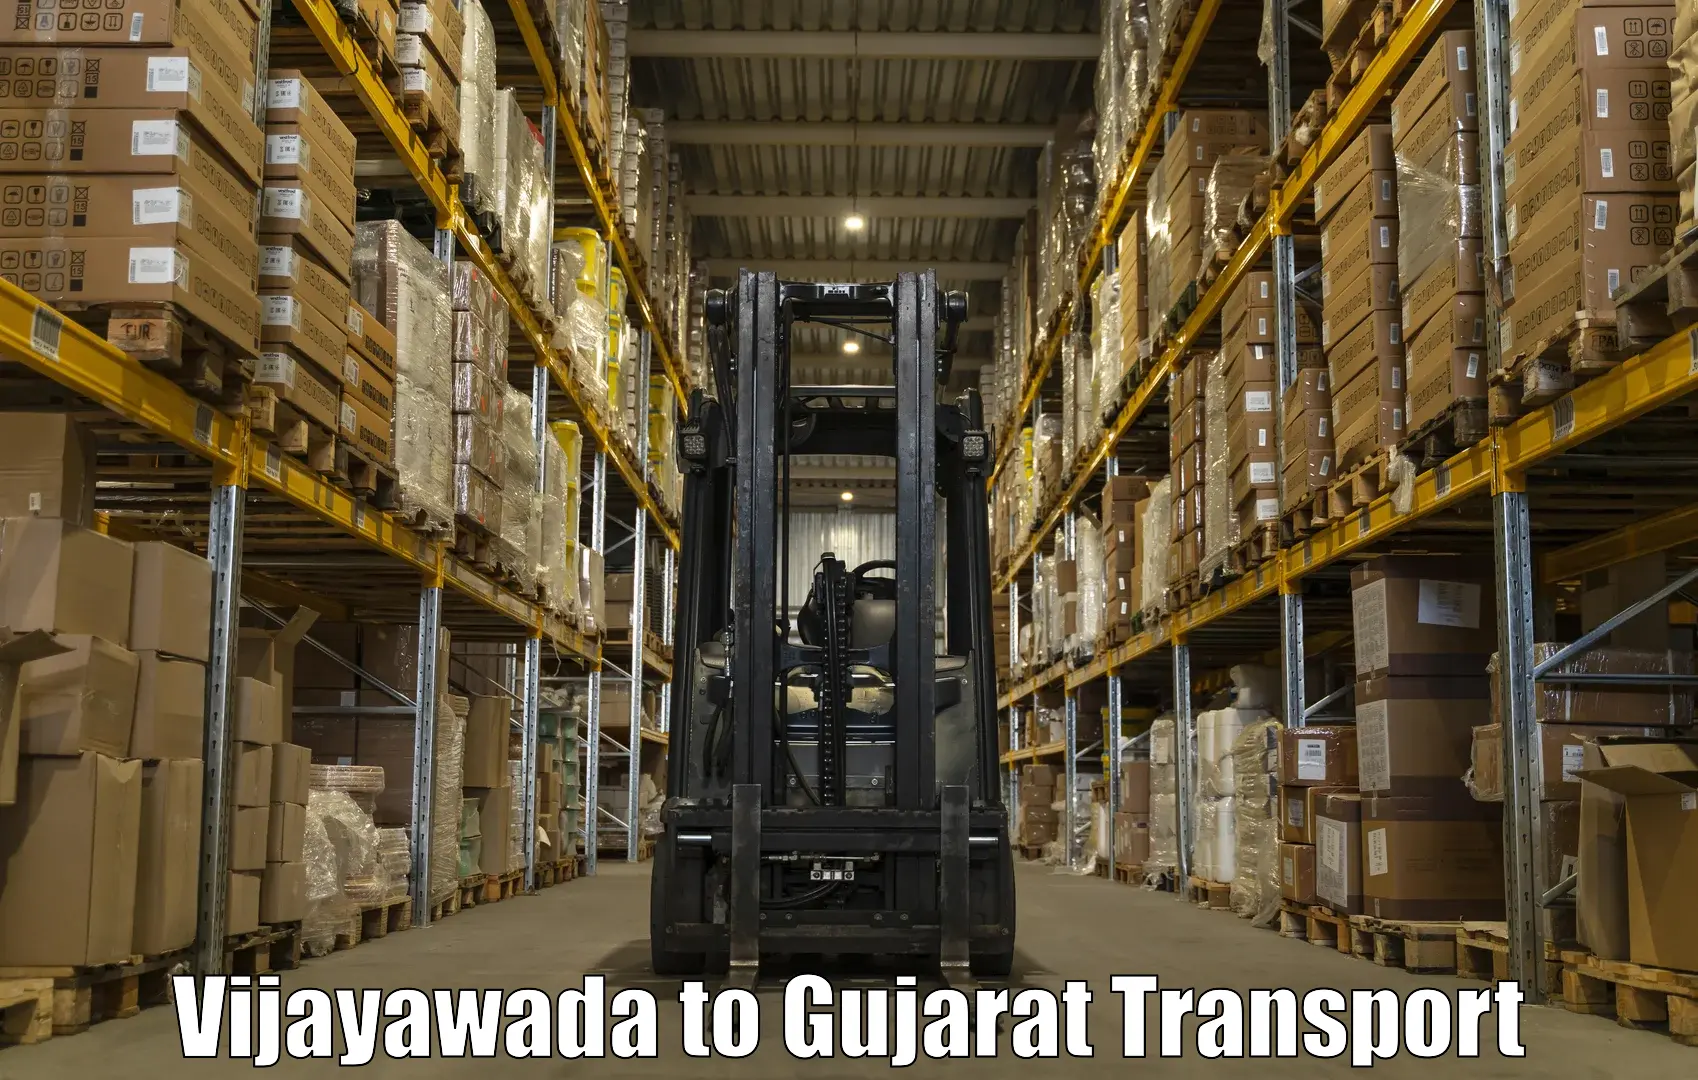 Sending bike to another city Vijayawada to Gondal